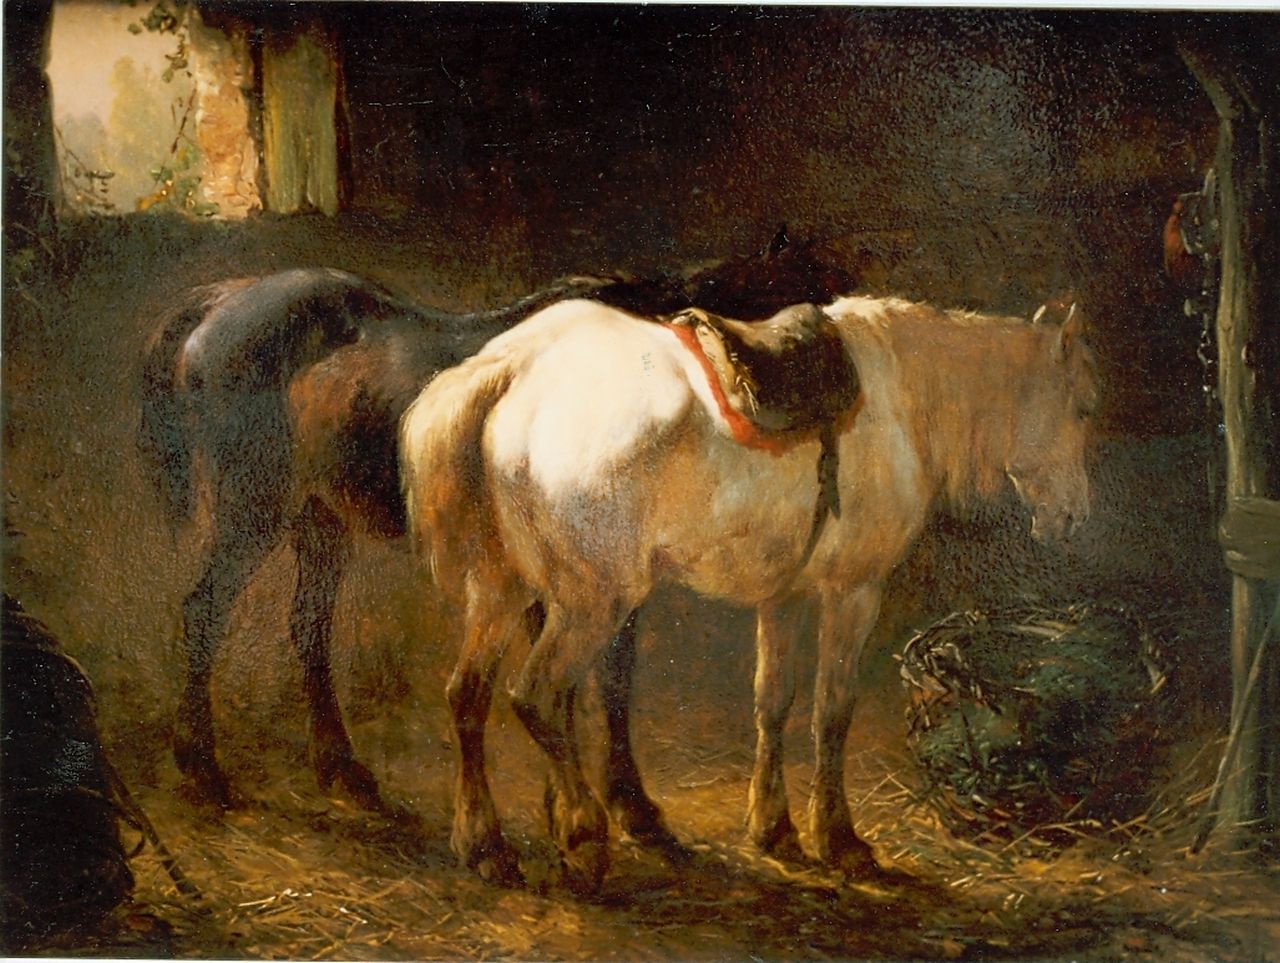 Verschuur W.  | Wouterus Verschuur, Stable interior with two horses, Öl auf Leinwand auf Holz 18,1 x 24,2 cm, signed l.r.